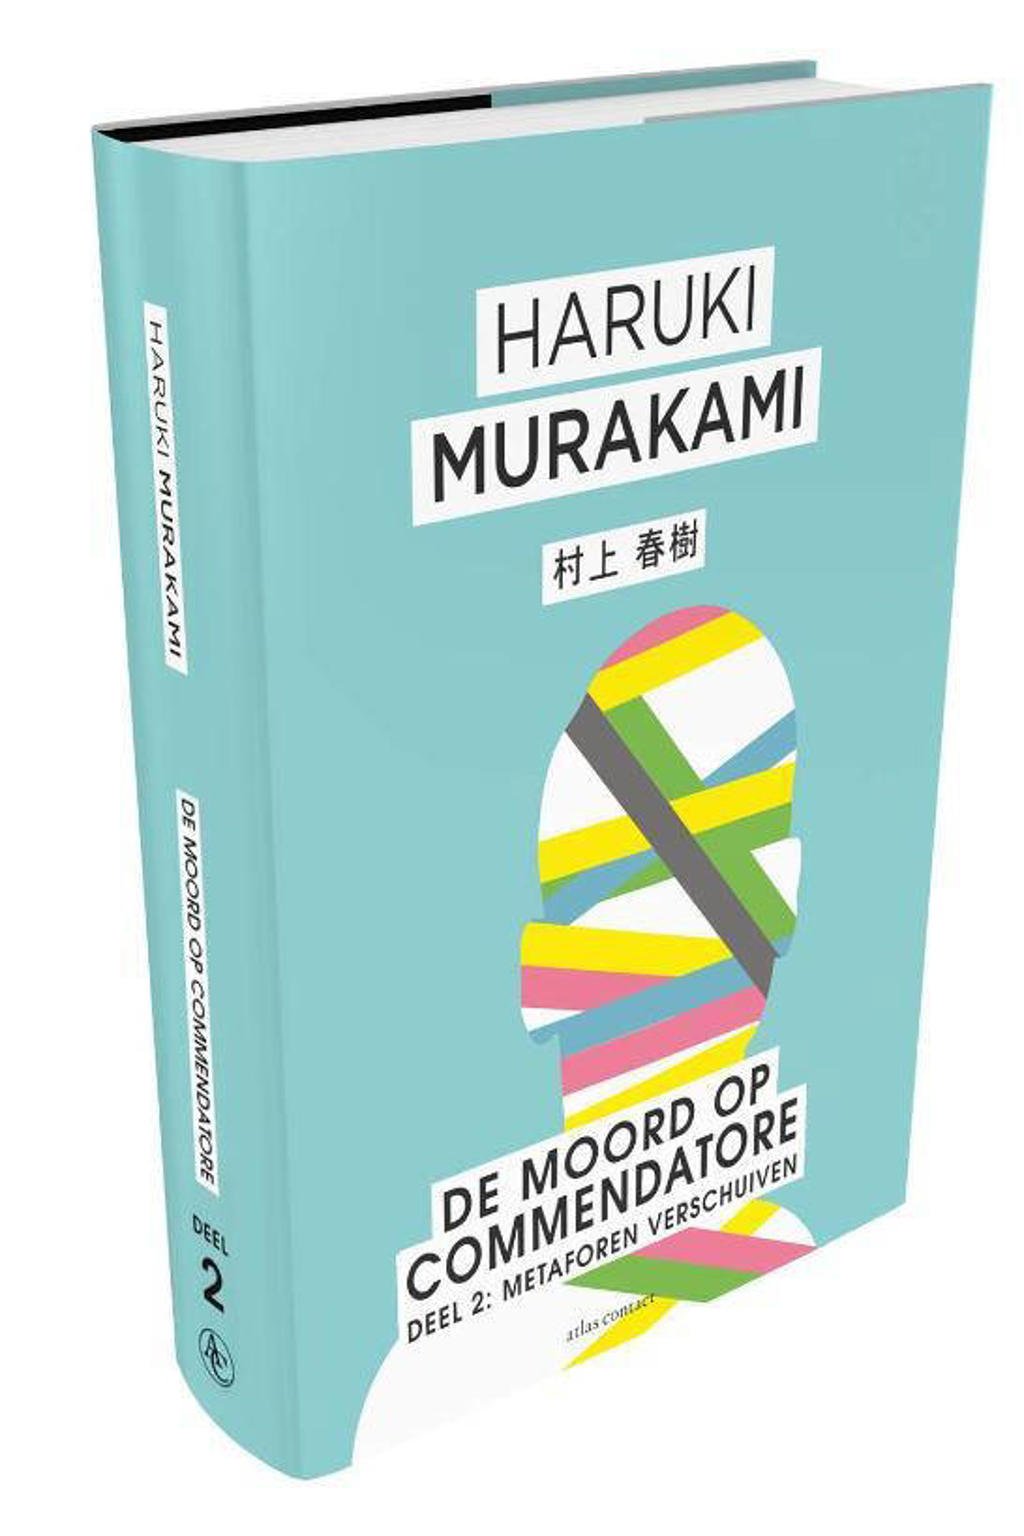 De moord op Commendatore- Deel 2 - Haruki Murakami